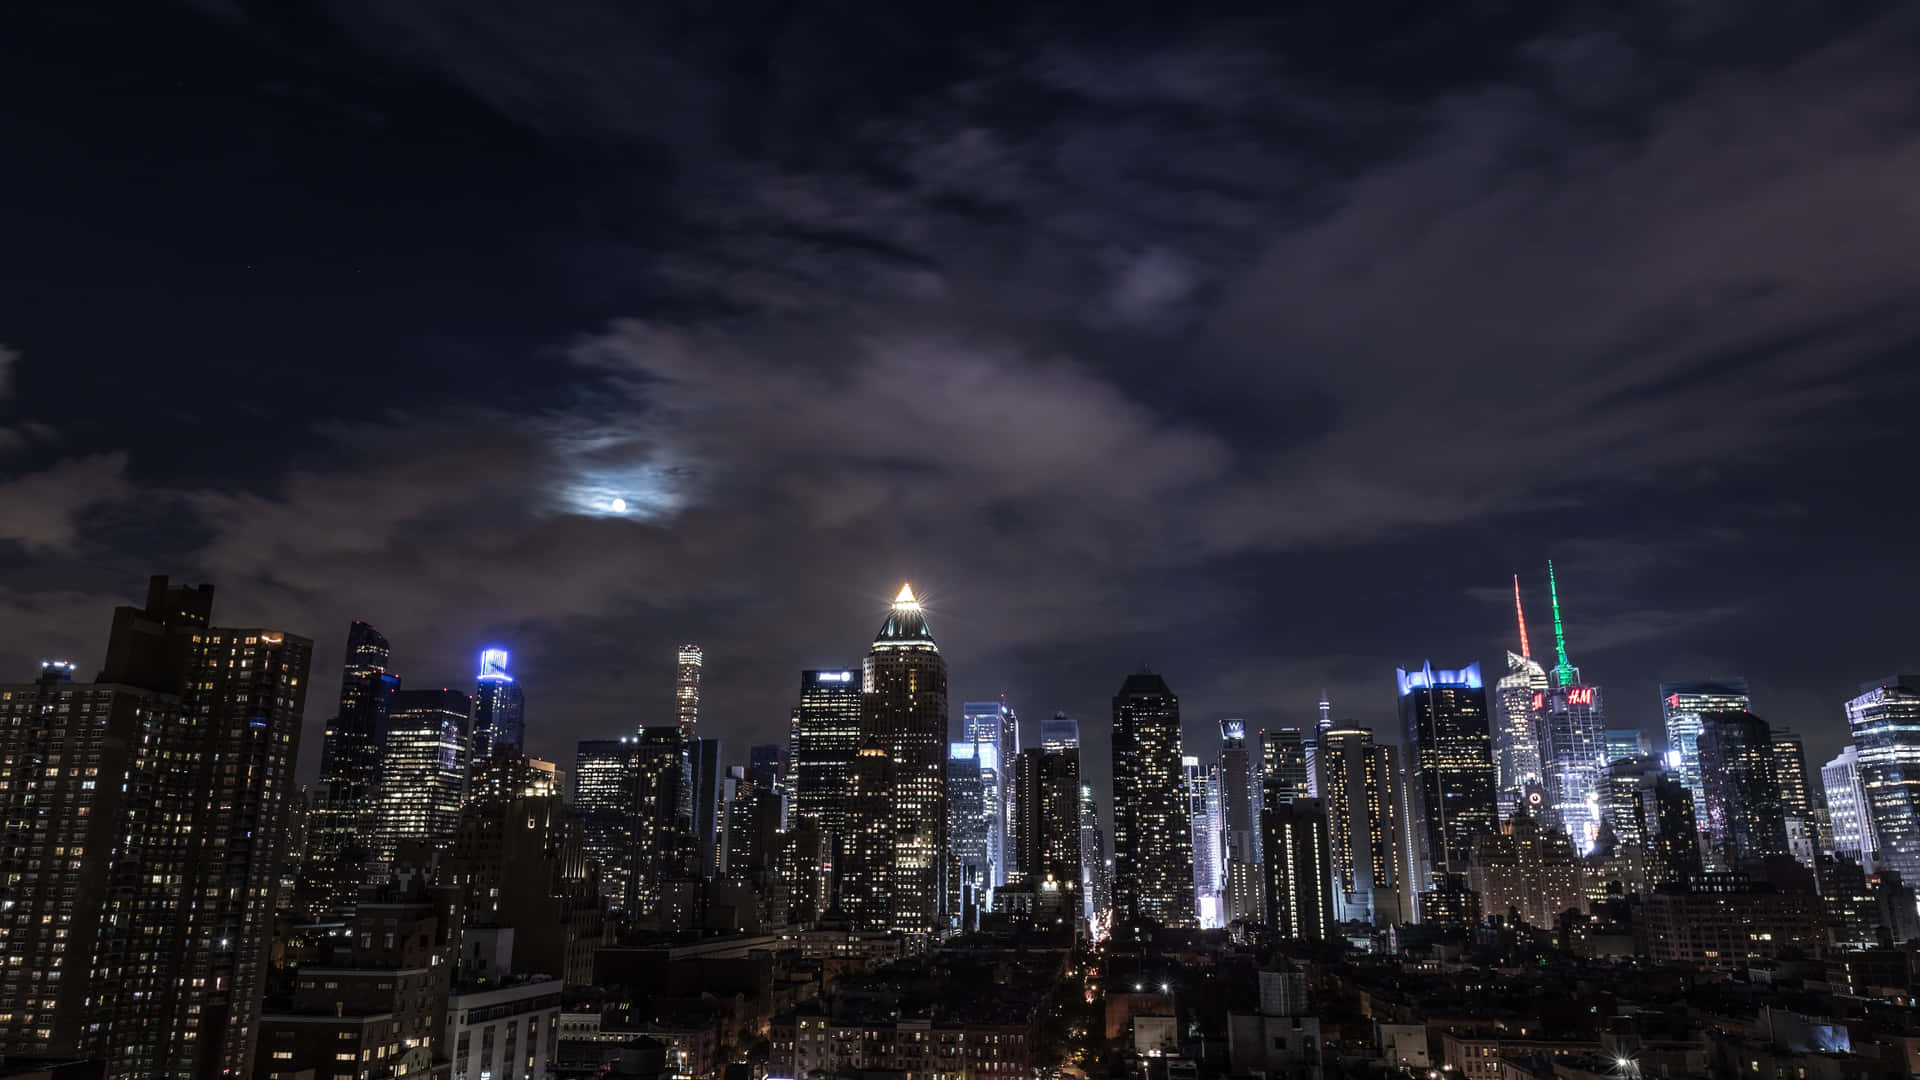 Tag en spadseretur ned ad de lyse og travle gader i New York City om natten Wallpaper